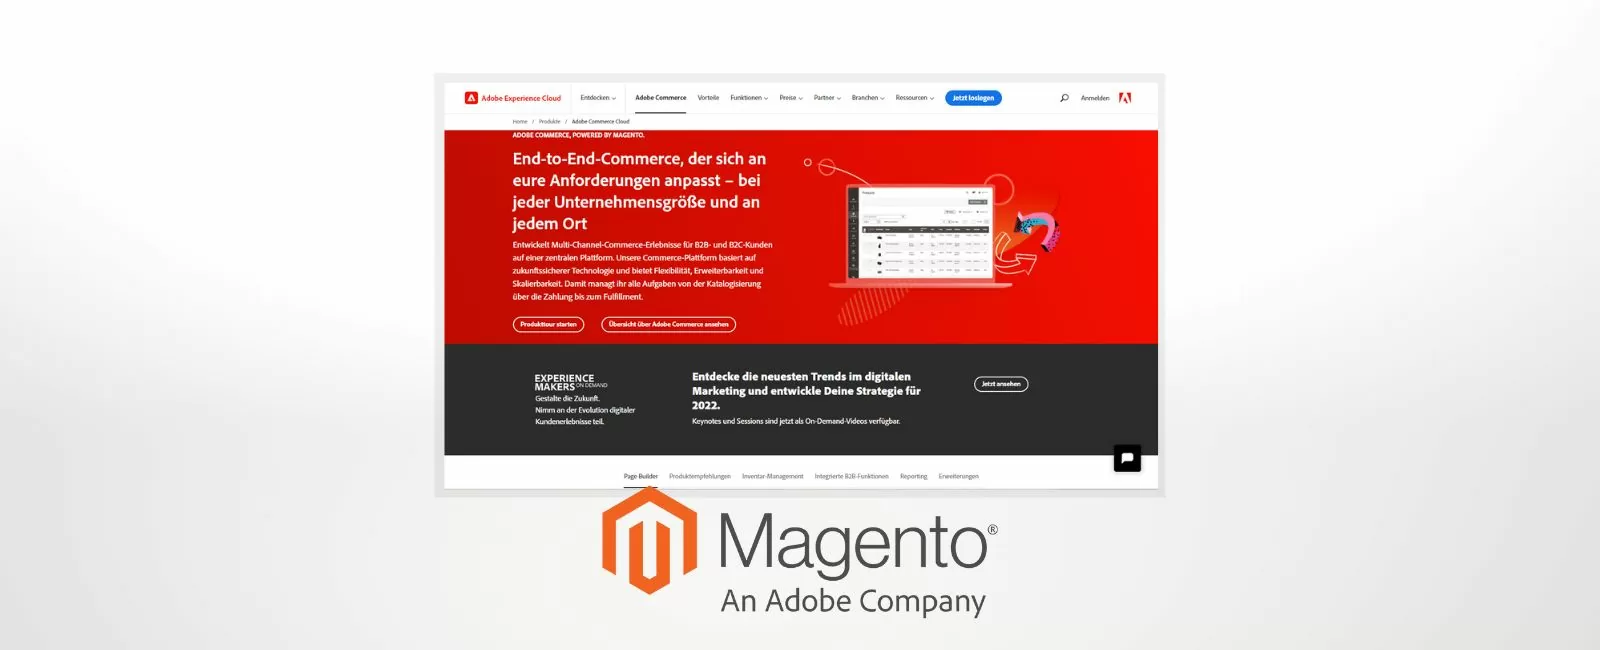 Homepage von Magento mit Magento-Logo